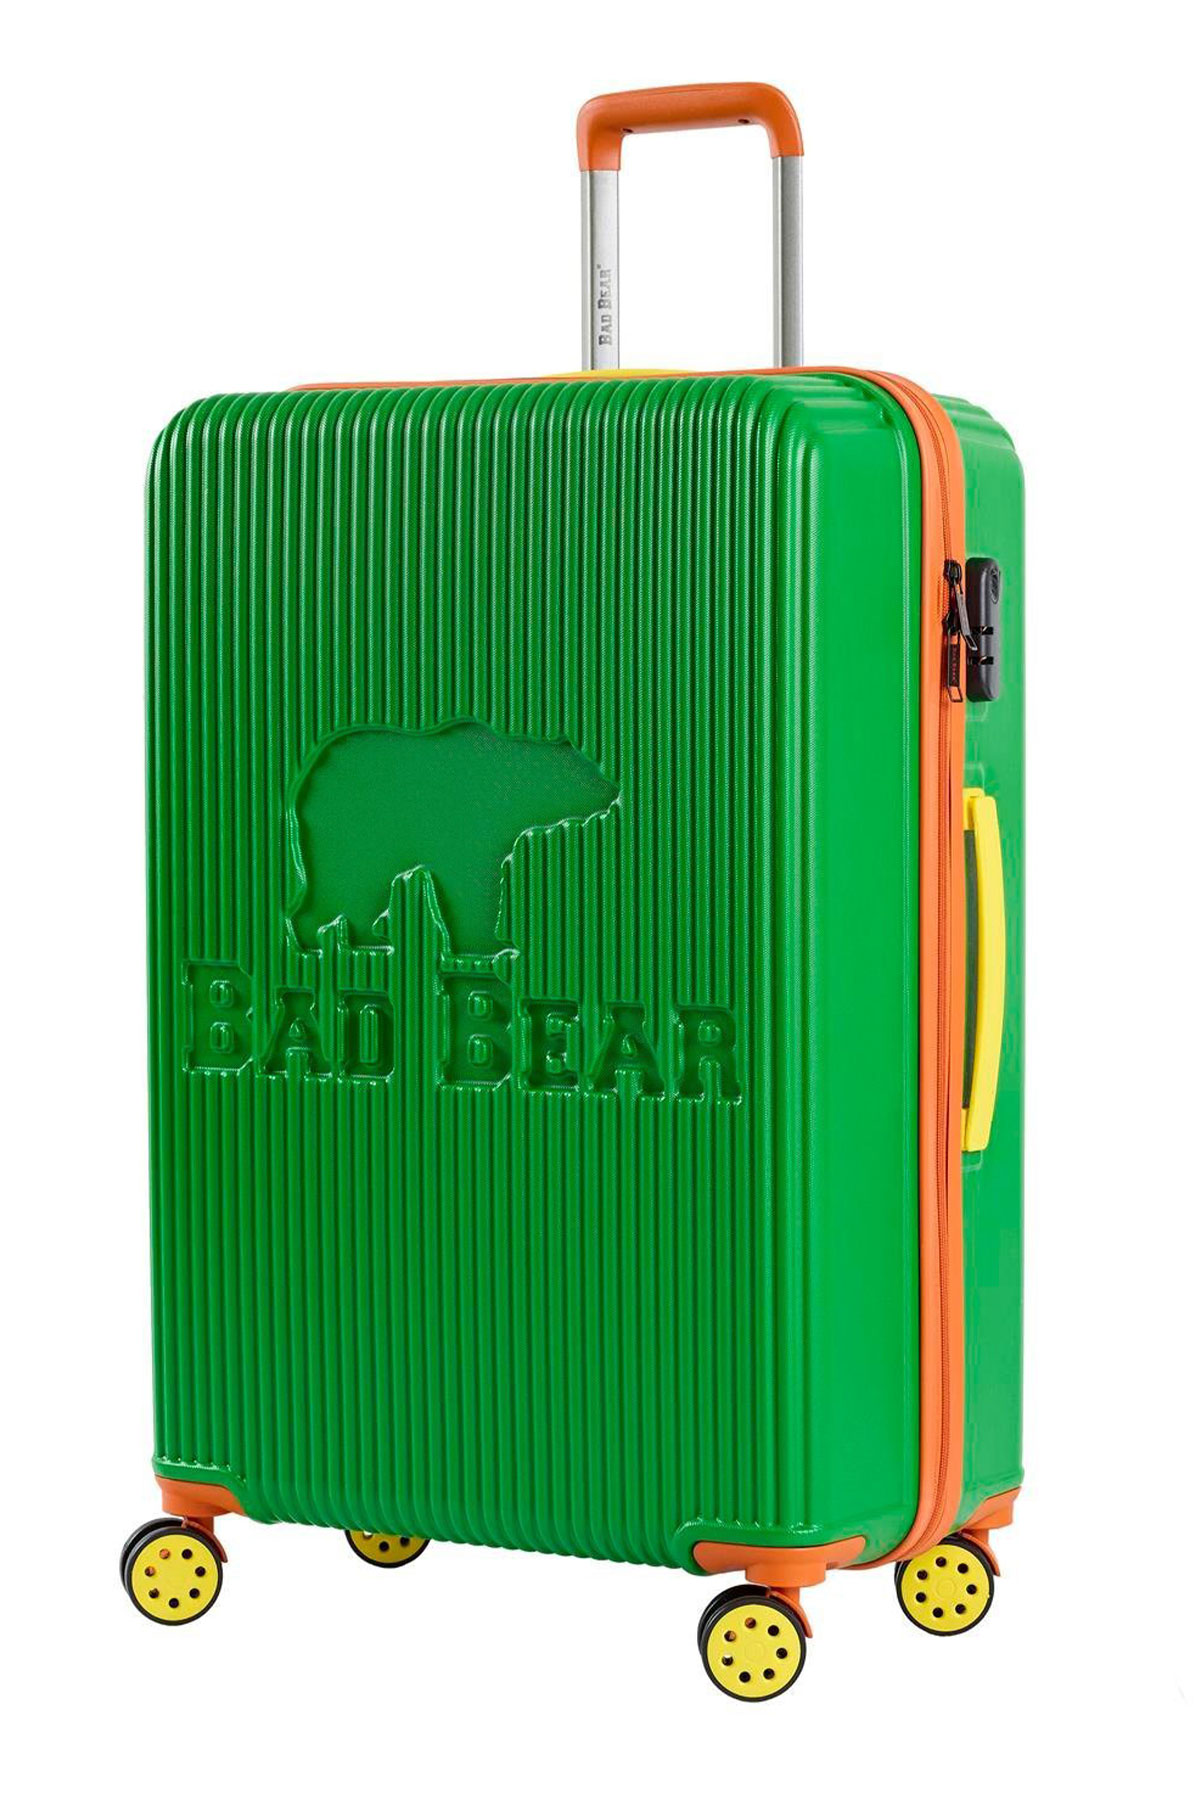 Bad Bear Logo Yeşil Küçük Boy Seyahat Tekerlekli ABS Valiz 40 Lt. 